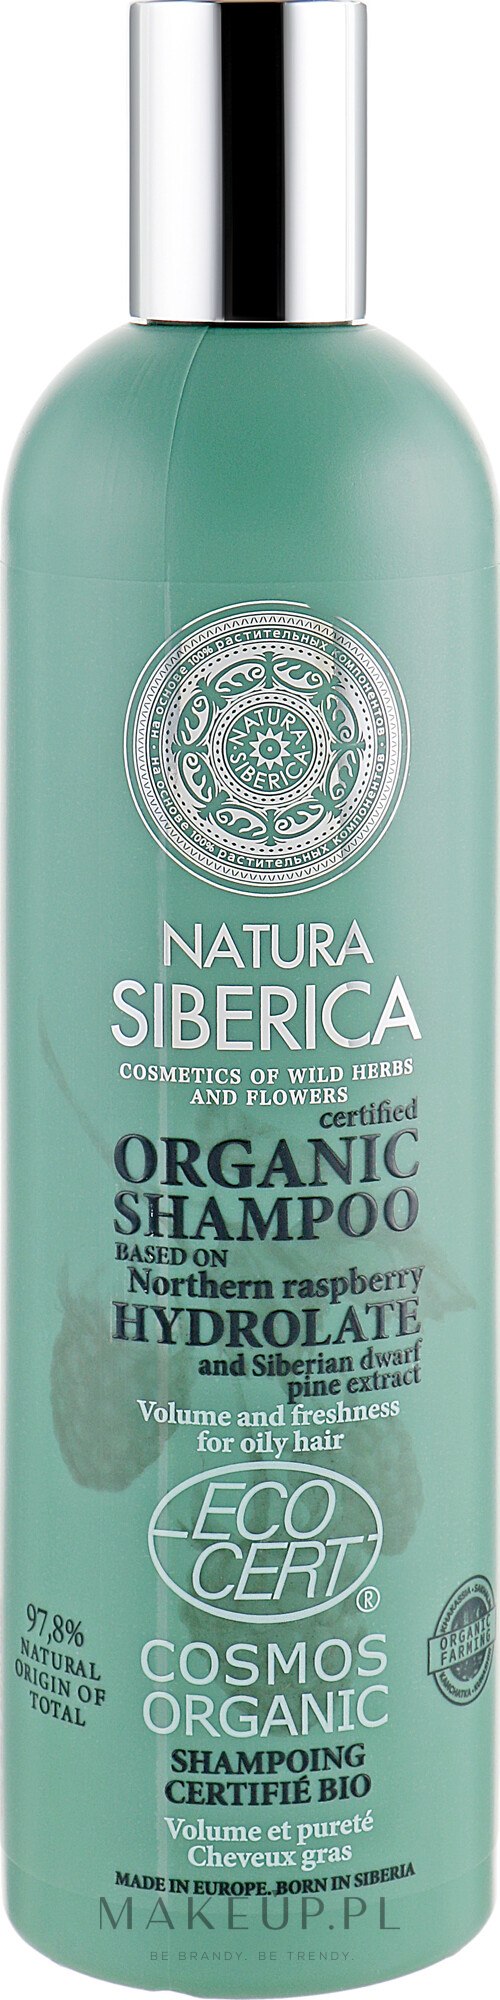 szampon siberica natura